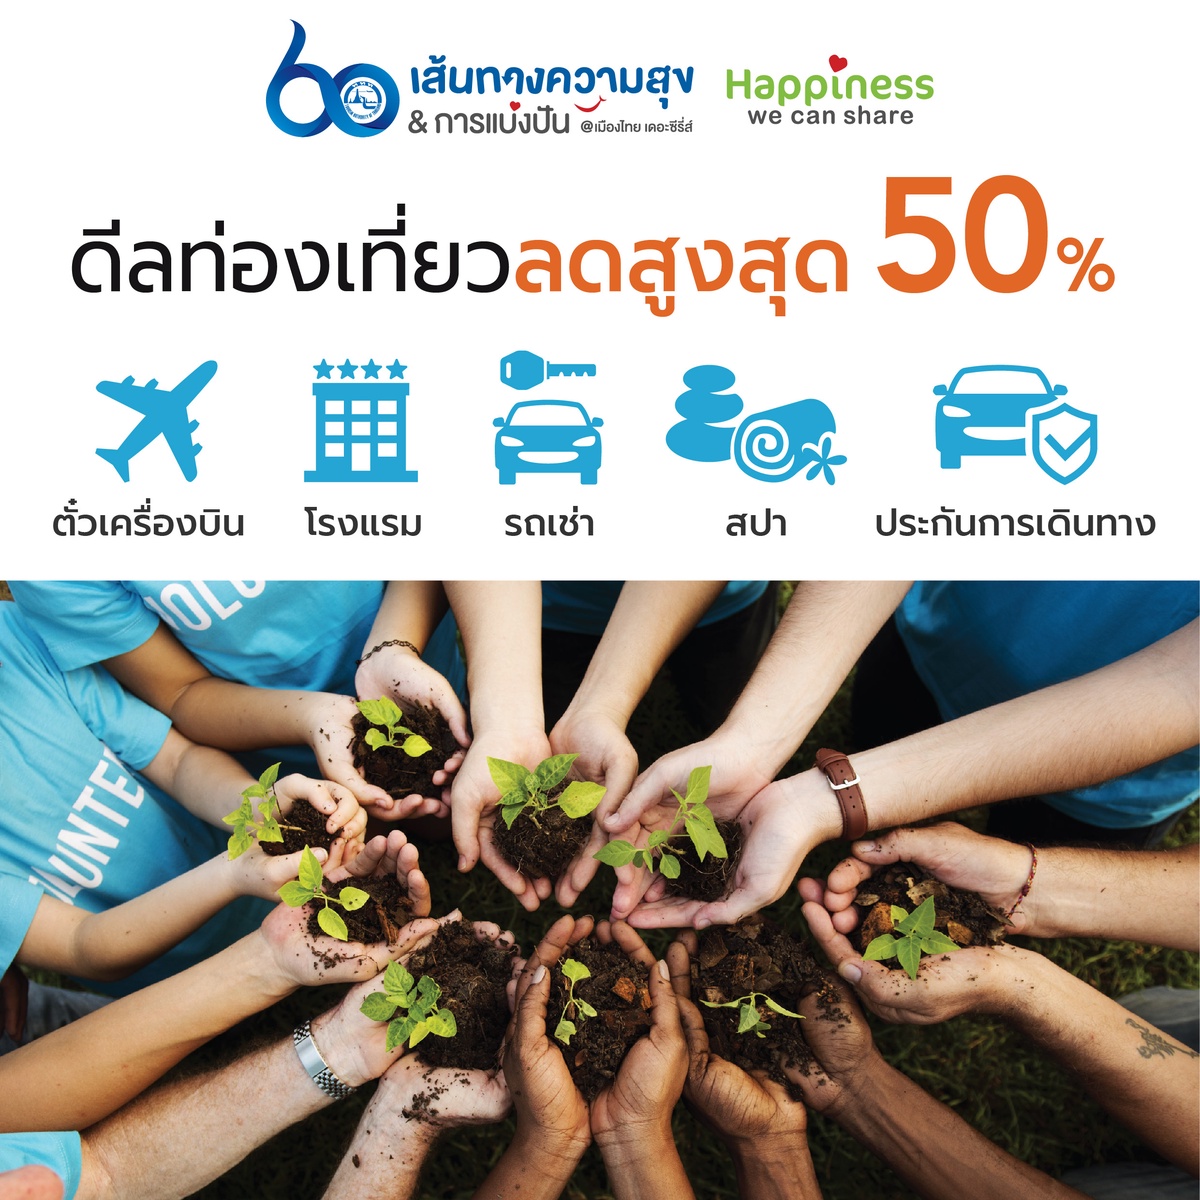 ททท. ชวนนักท่องเที่ยวออกเดินทางไปกับทริปท่องเที่ยวจิตอาสา  ทั่วไทยในแคมเปญ ”Happiness we can share”